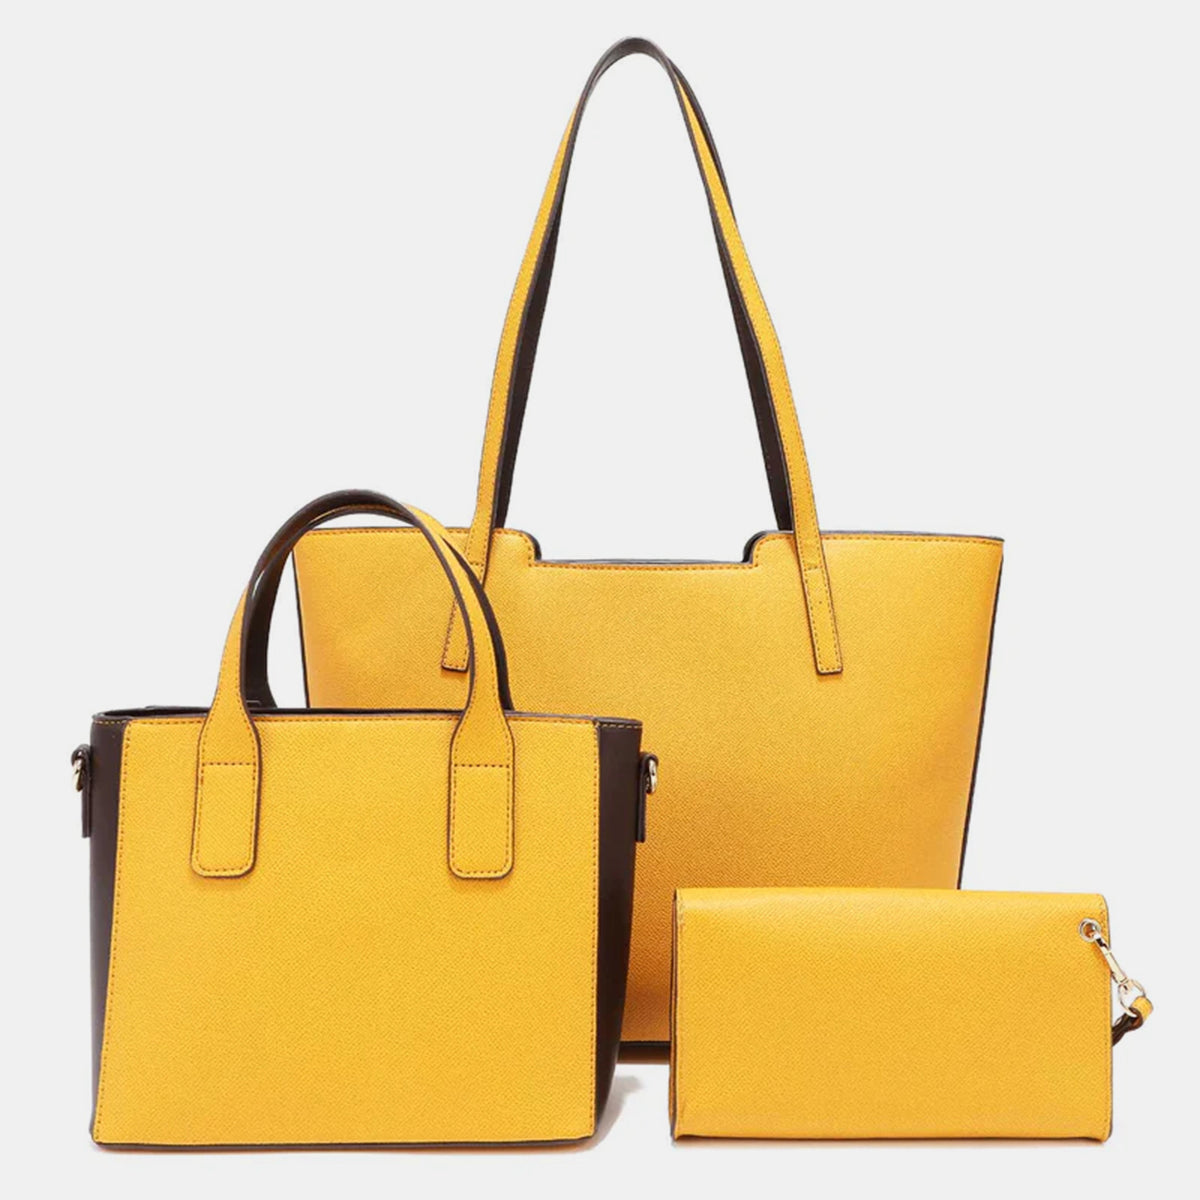 Nicole Lee USA Serpiente Handbag Set *4 colors*